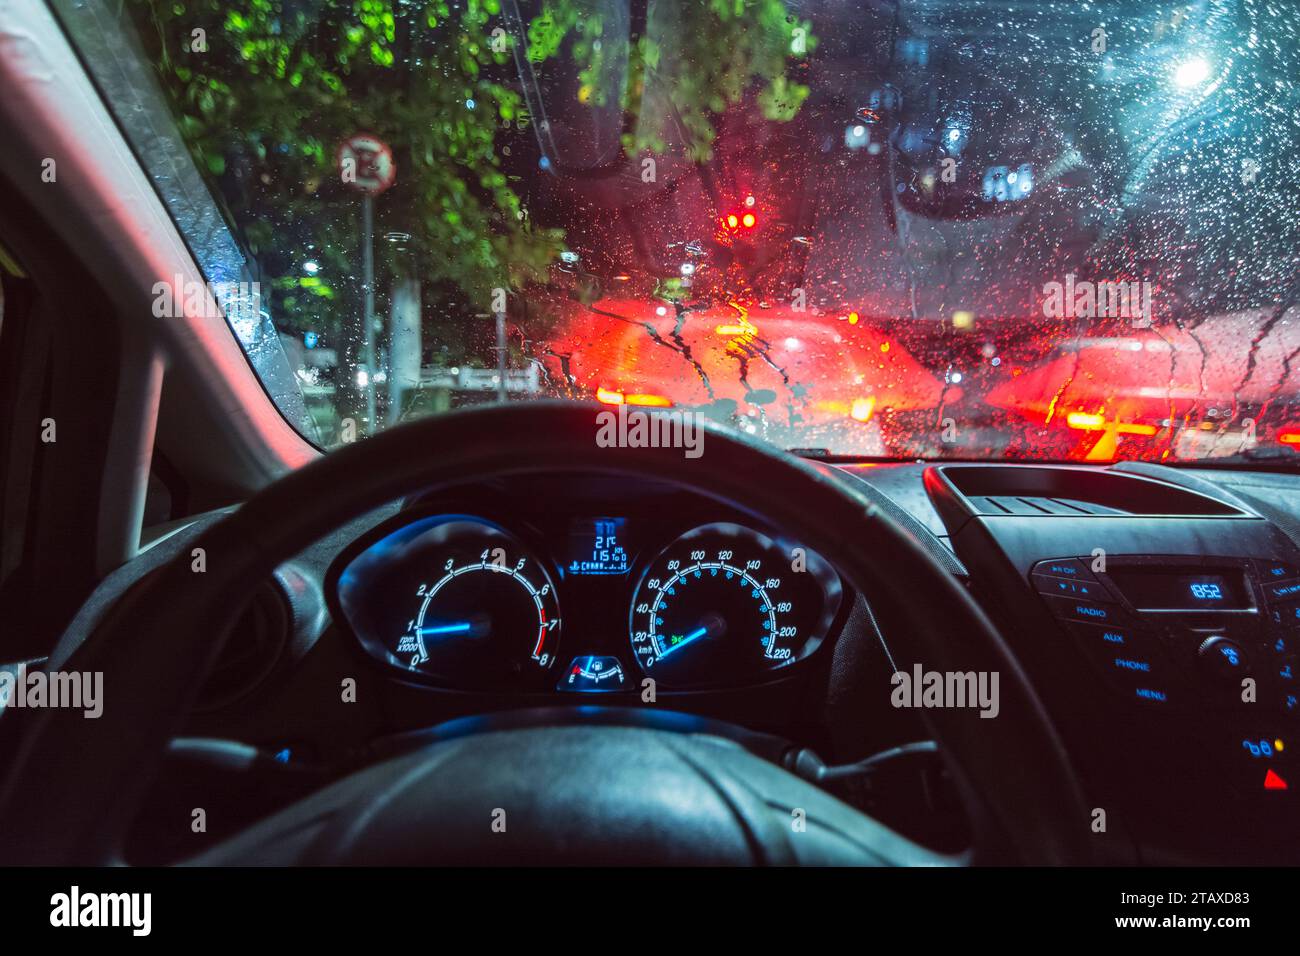 Innenansicht eines Autos, aus Sicht des Fahrers, hielt an einem regnerischen Tag an einer Ampel an. Armaturenbrettbeleuchtung, Regenschutzscheibe. Stockfoto